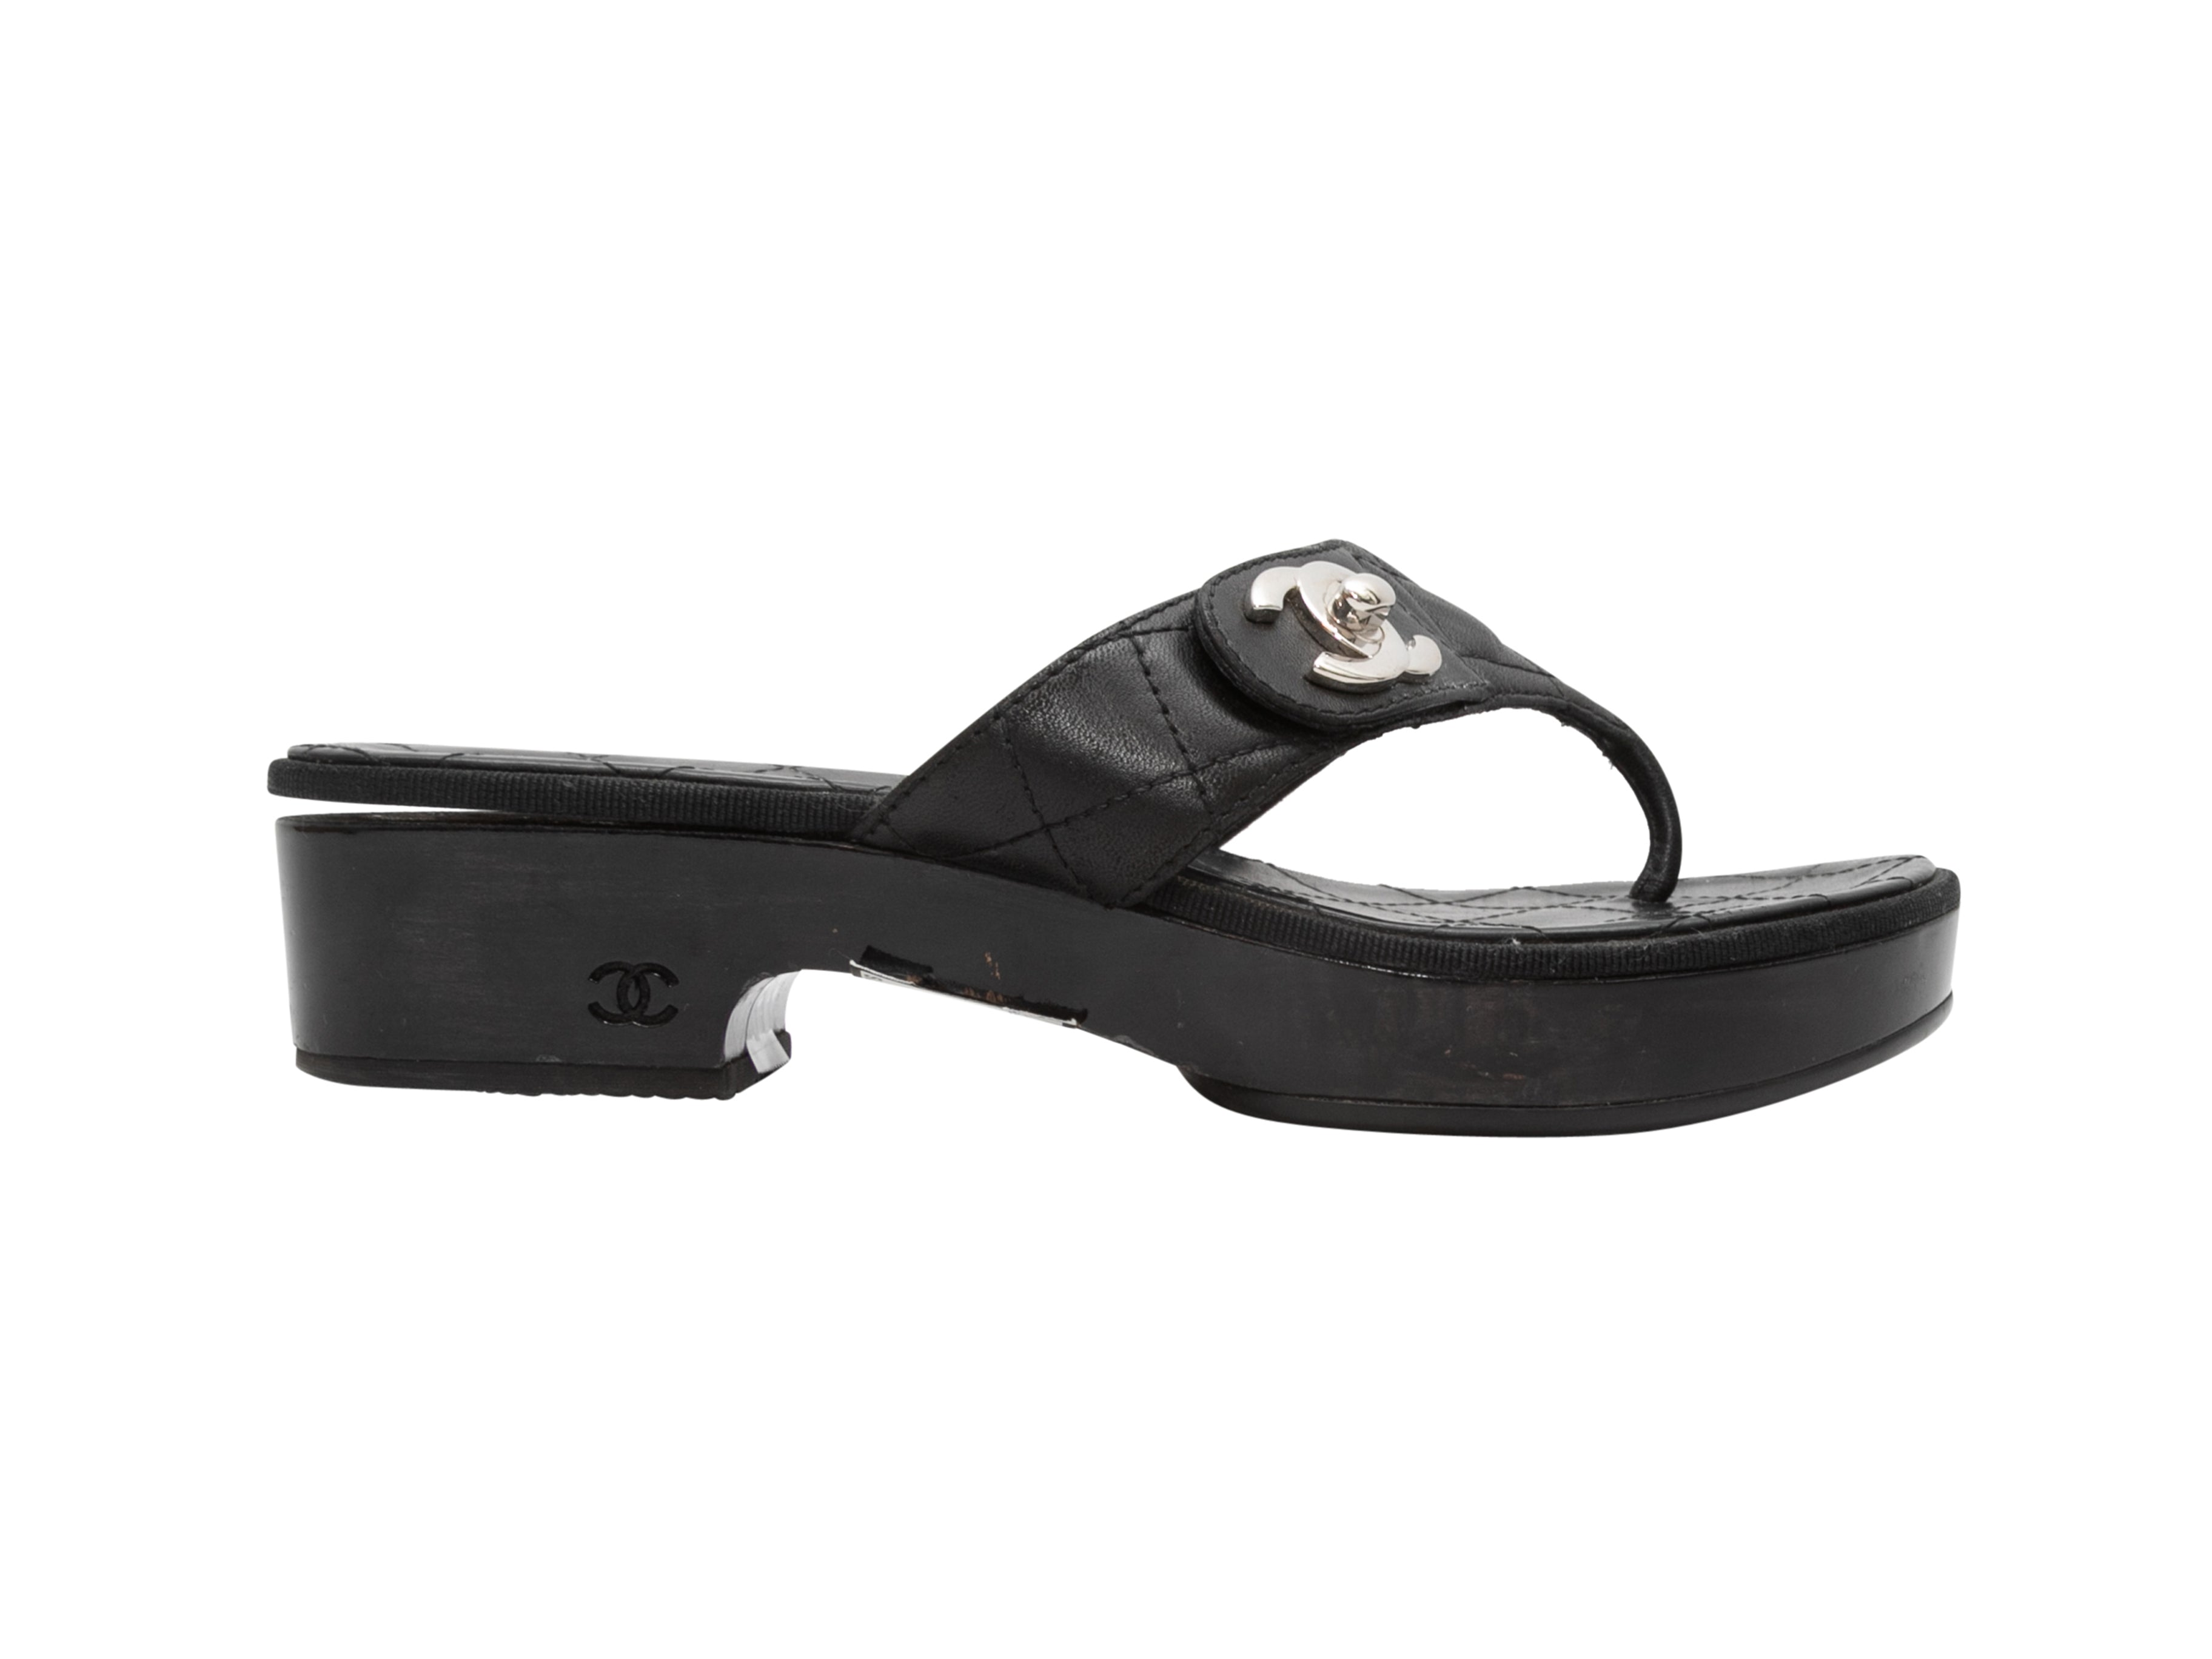 Black Chanel Quilted Platform Thong Sandals Size 37 – AmaflightschoolShops  Revival